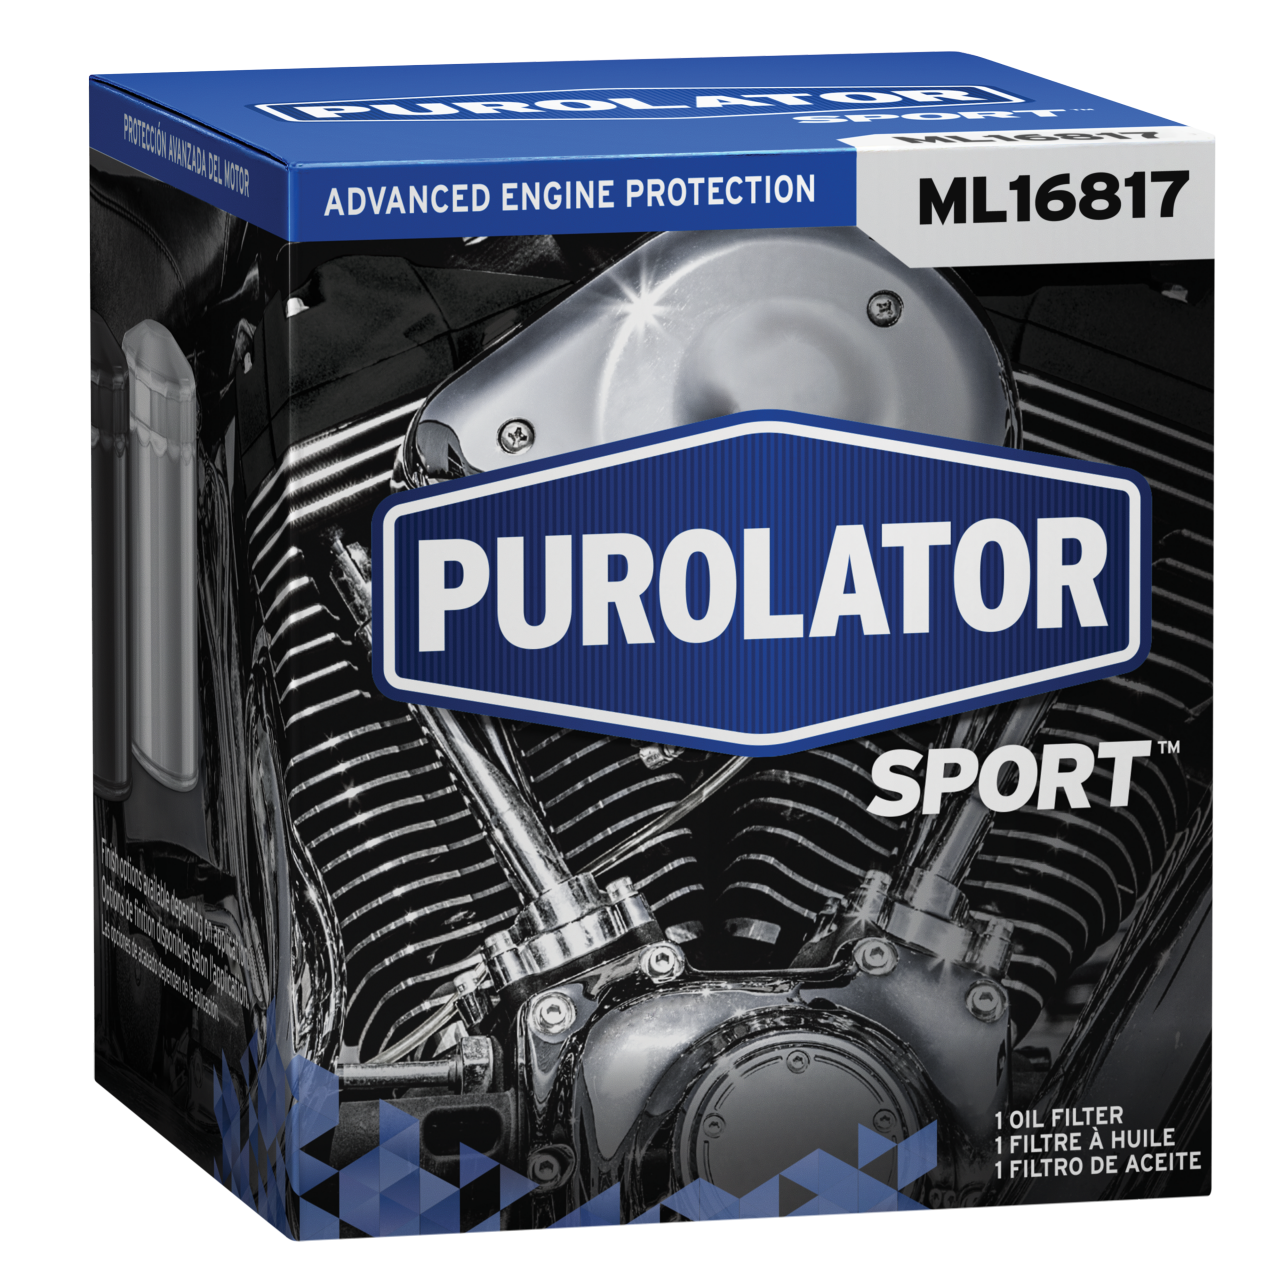 Los filtros de aceite PurolatorSPORT™ eliminan una alta proporción de suciedad y protegen el motor de motocicletas, vehículos todoterreno, motos de nieve y embarcaciones recreativas.